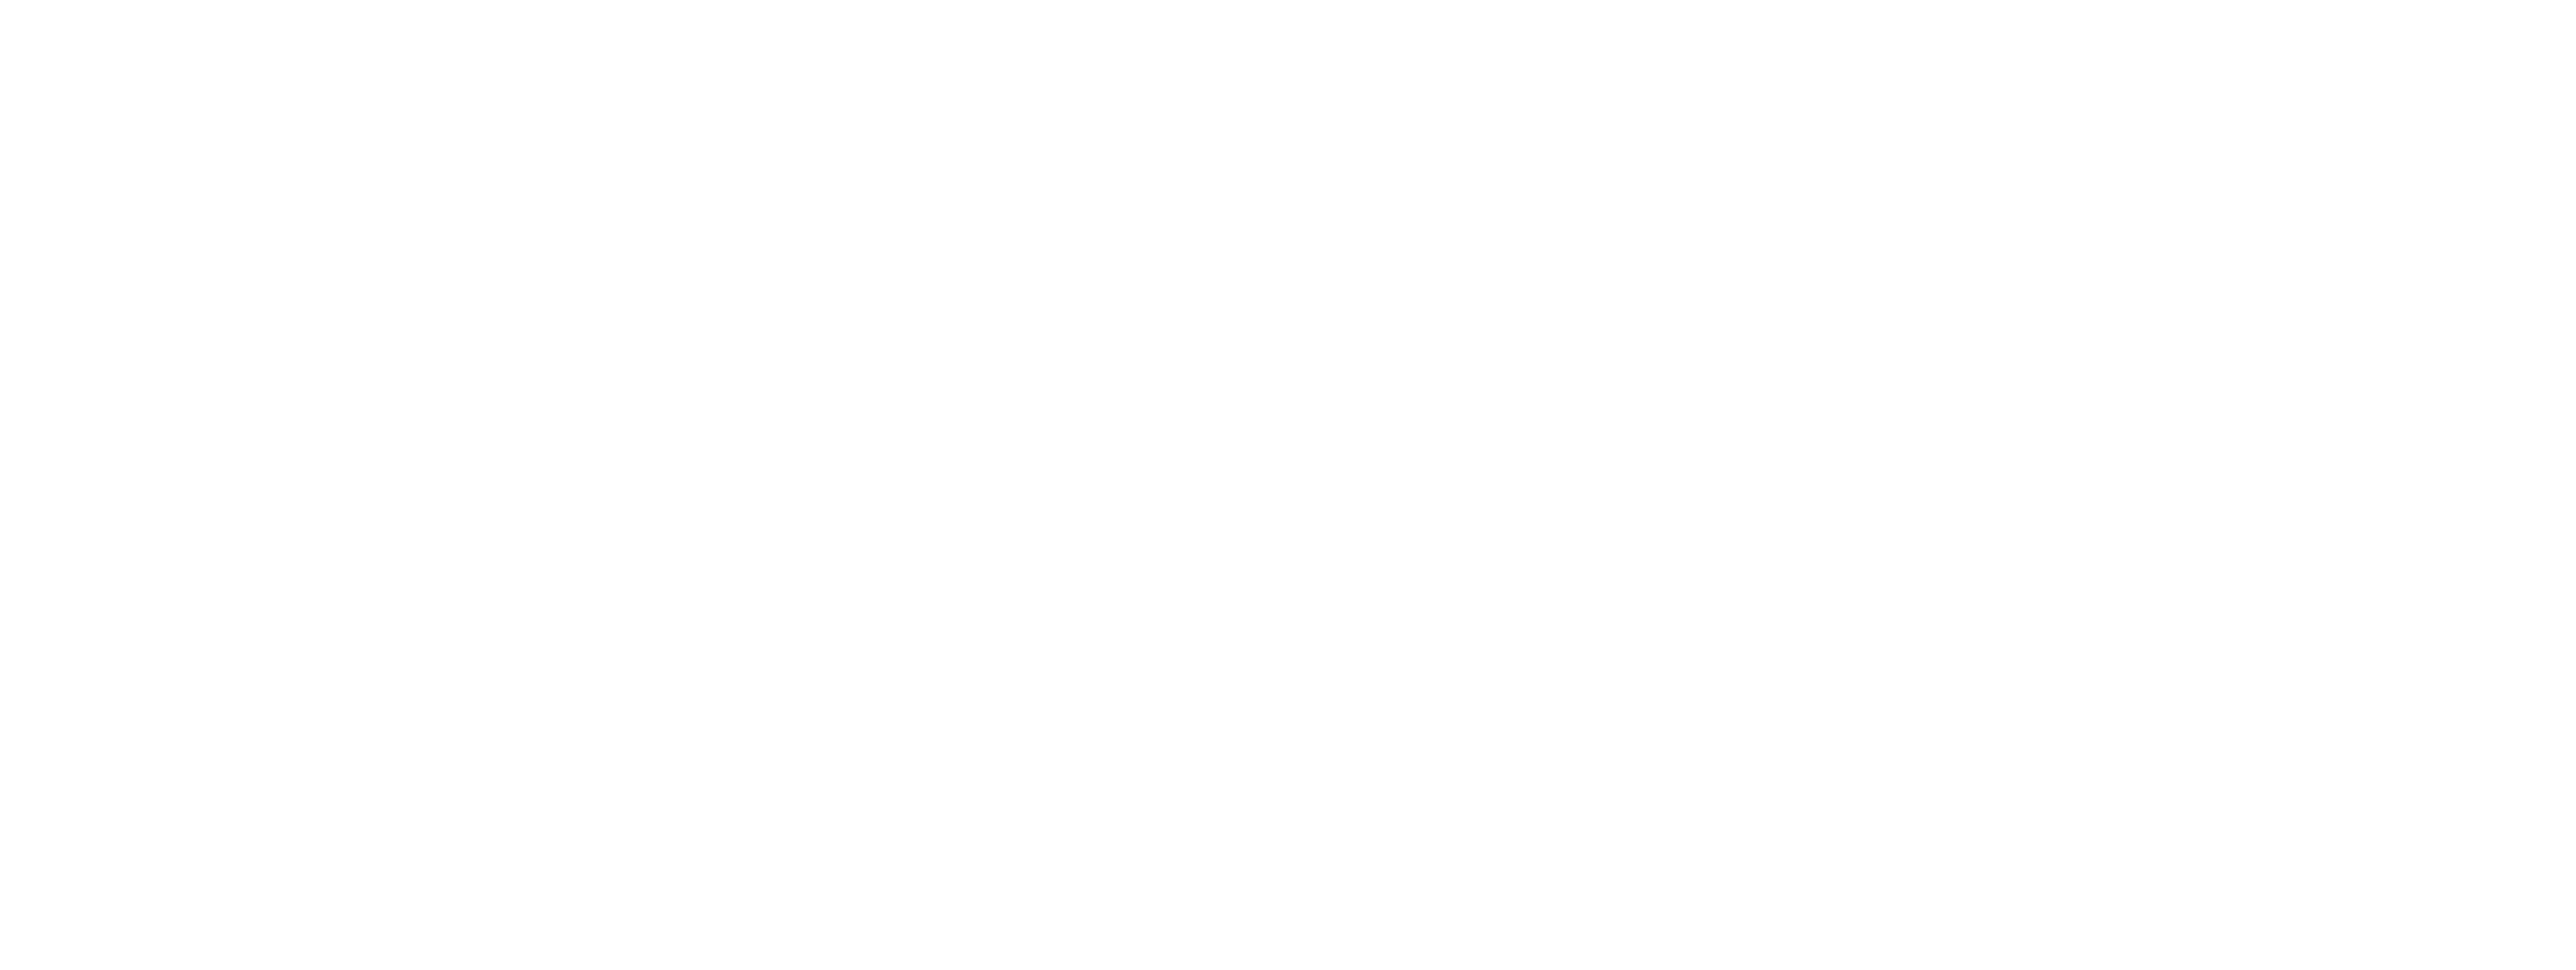 Pharma aero logo wit